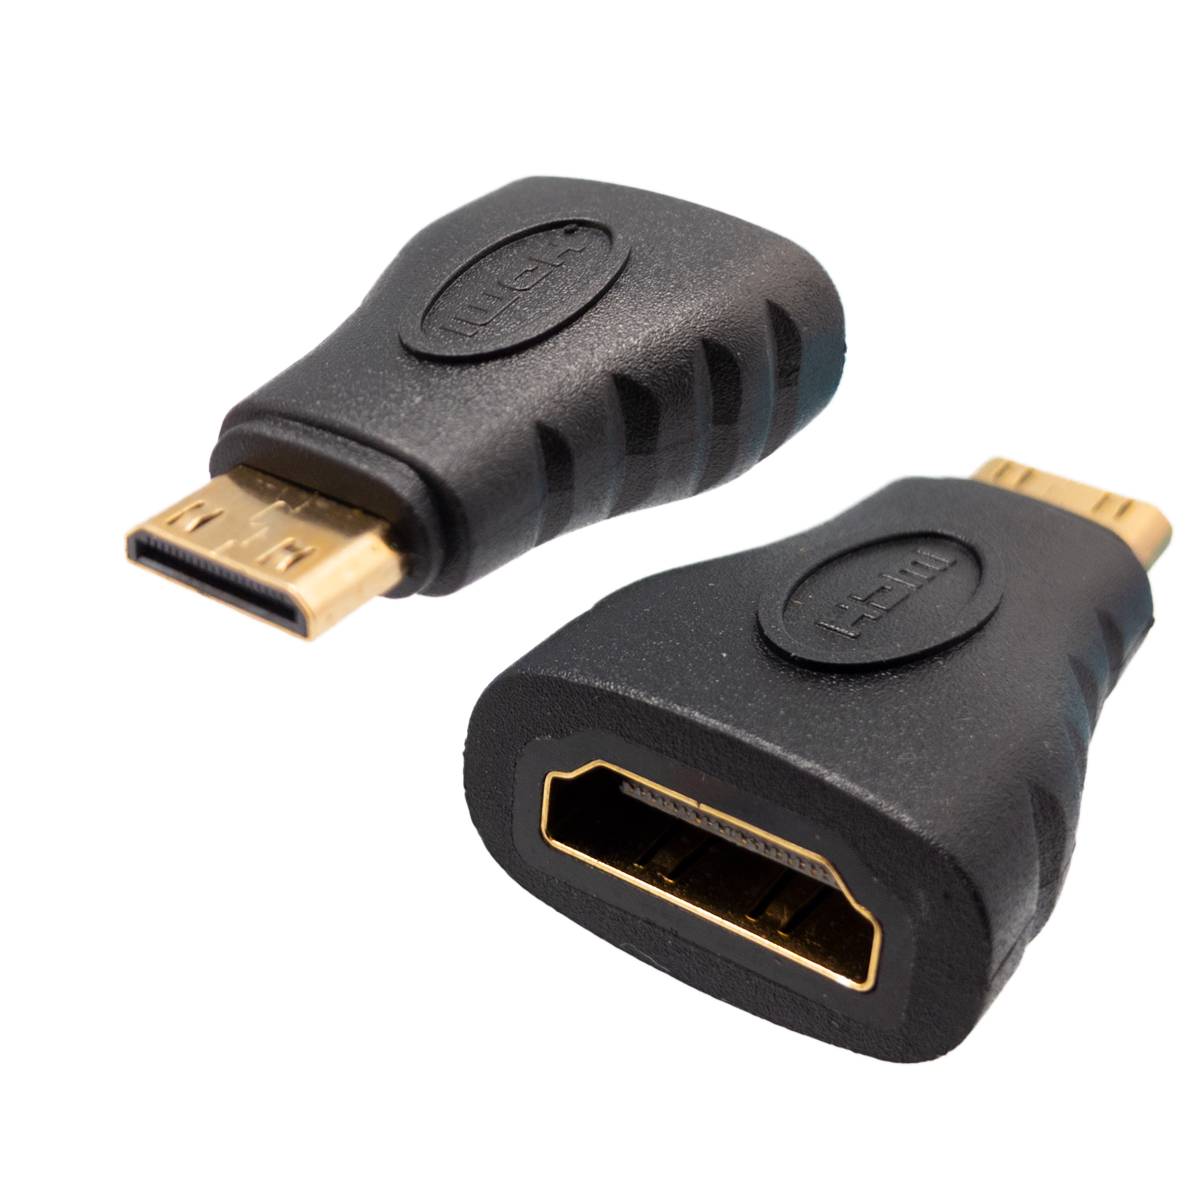 HDMI female to Mini HDMI male adapter